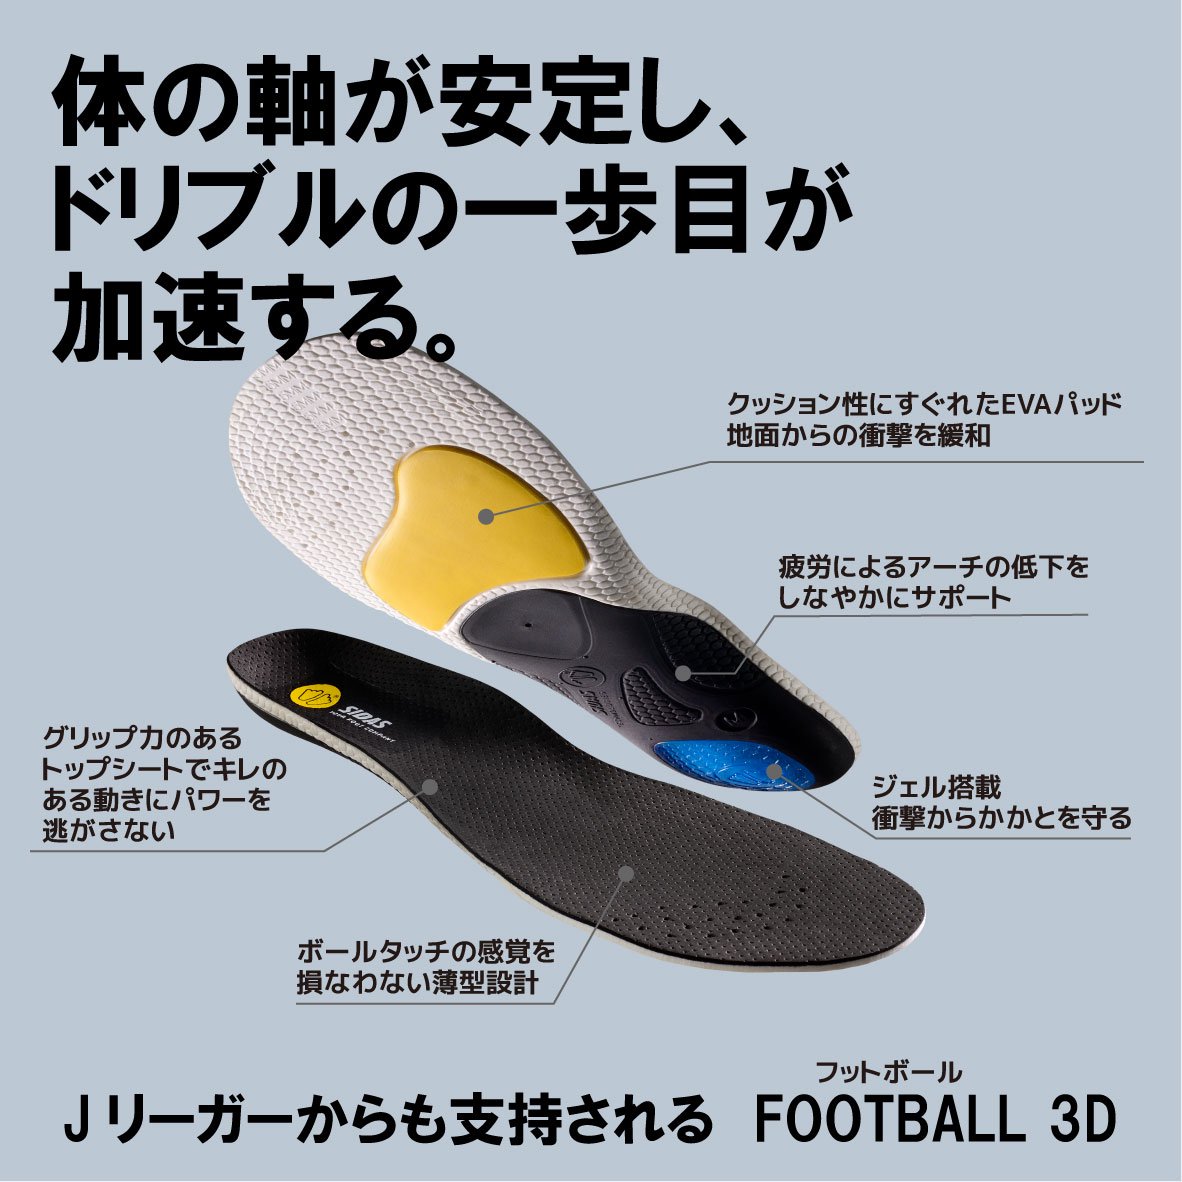 フットボール3Dの商品画像